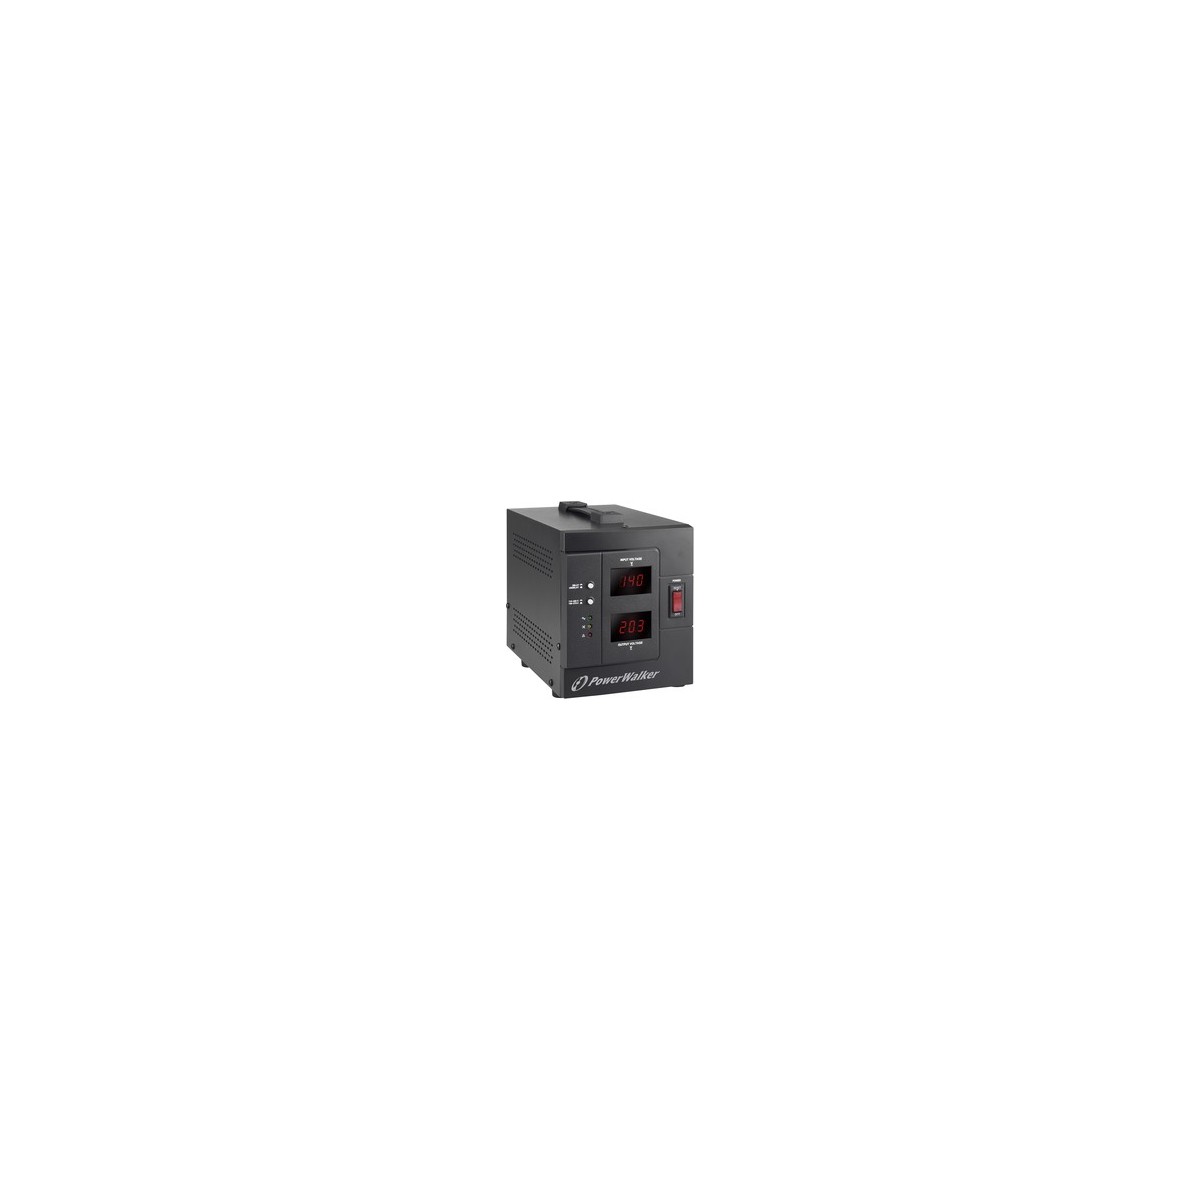 BlueWalker AVR 1500-SIV - 230 V - 50-60 Hz - 1.5 kVA - 1200 W - 2 AC outlet(s) - Type F